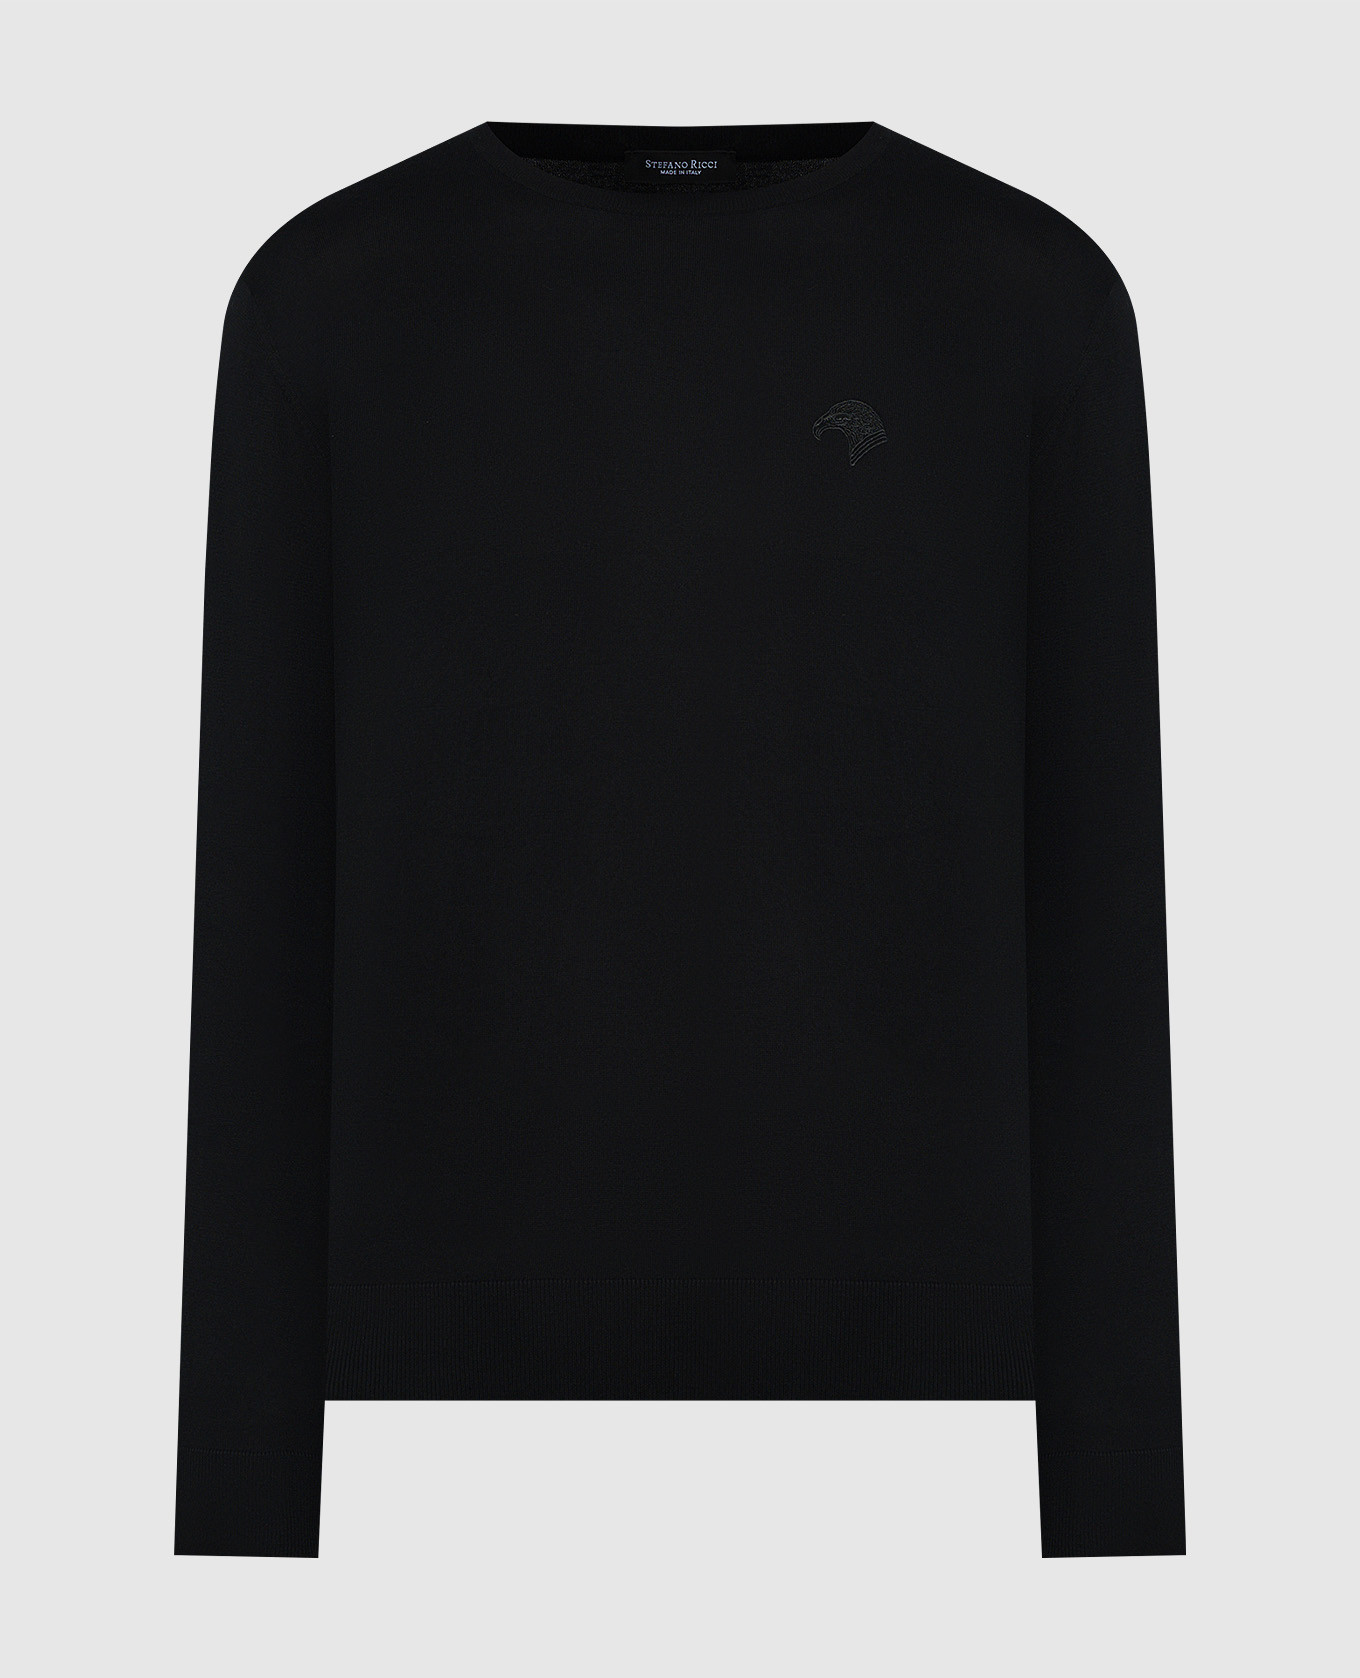 Черный джемпер с вышивкой логотип логотип